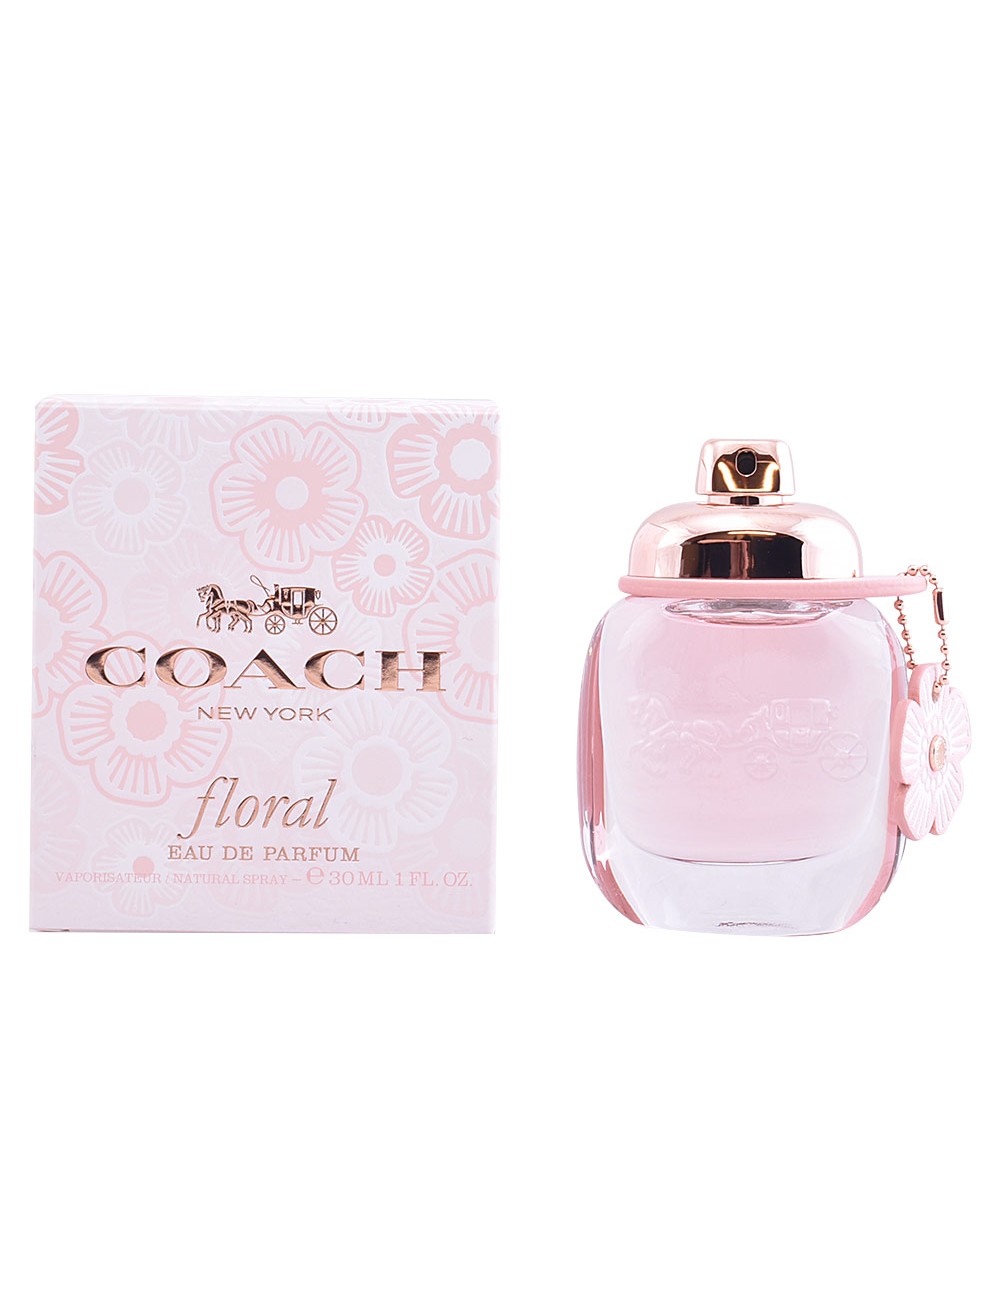 COACH FLORAL eau de parfum vaporisateur 30 ml NE100617